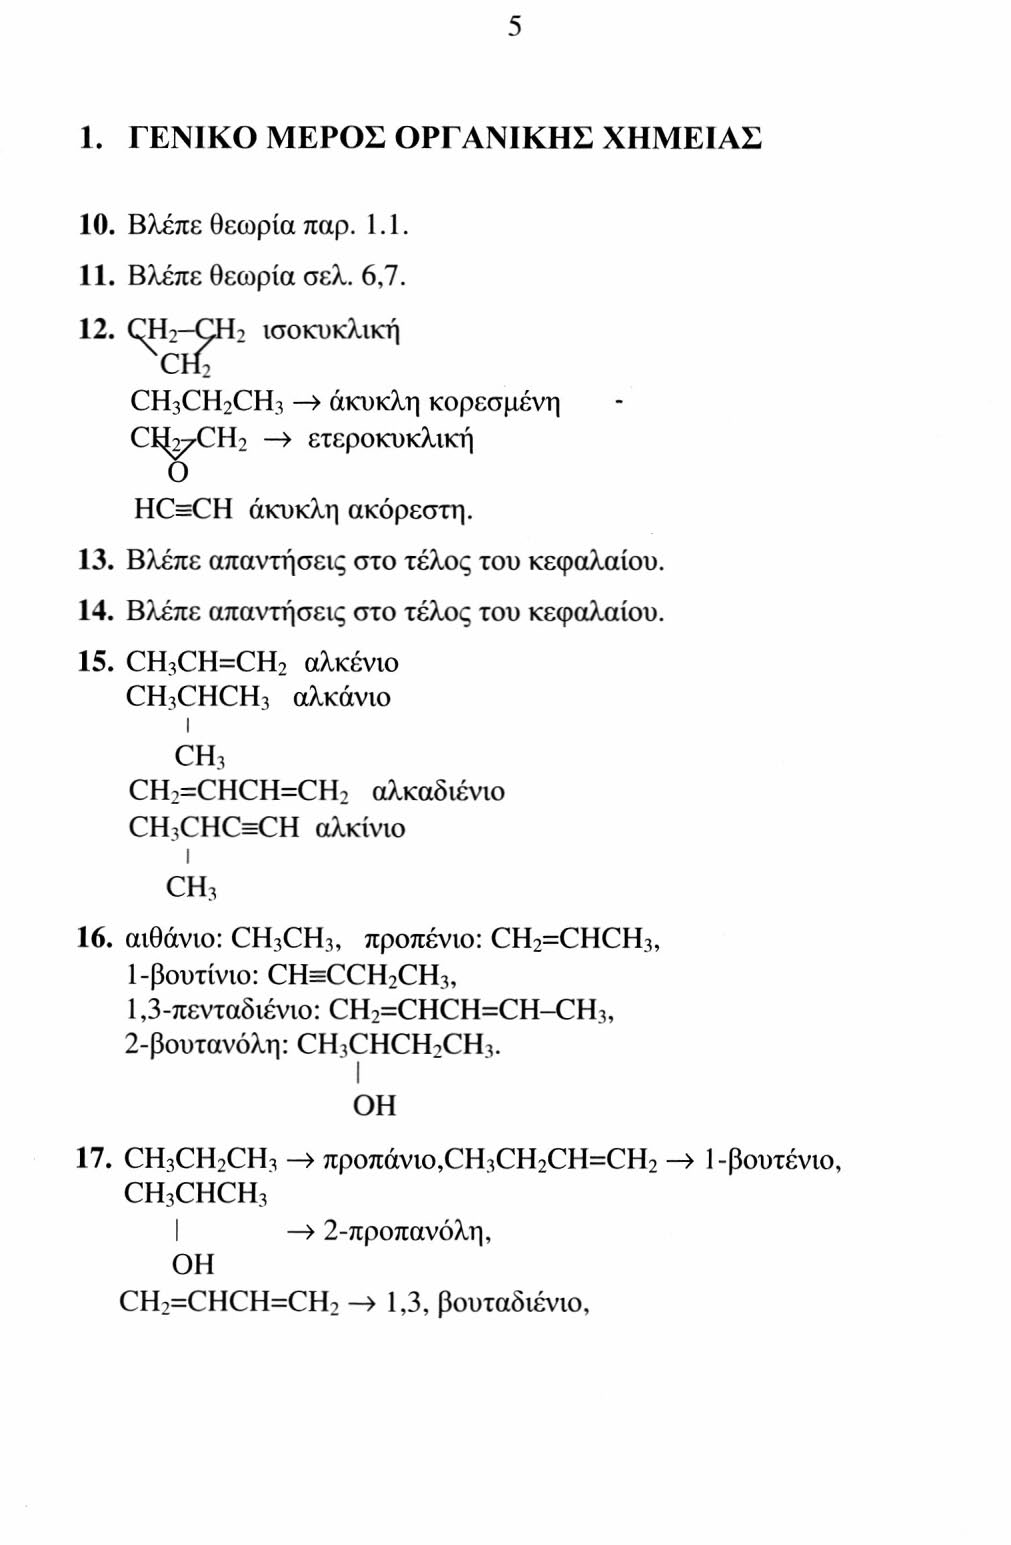 CH,CHCHCH, : 3-μεθυλο -2-βουτανόλη, I I CH 3 OH CH 3 OCH 3 : διμεθυλαιθέρας, CH 3 CH 2 COCH 3 : βουτανόνη. 27. Βλέπε απαντήσεις στο τέλος του κεφαλαίου. 28. Βλέπε απαντήσεις στο τέλος του κεφαλαίου. 29.